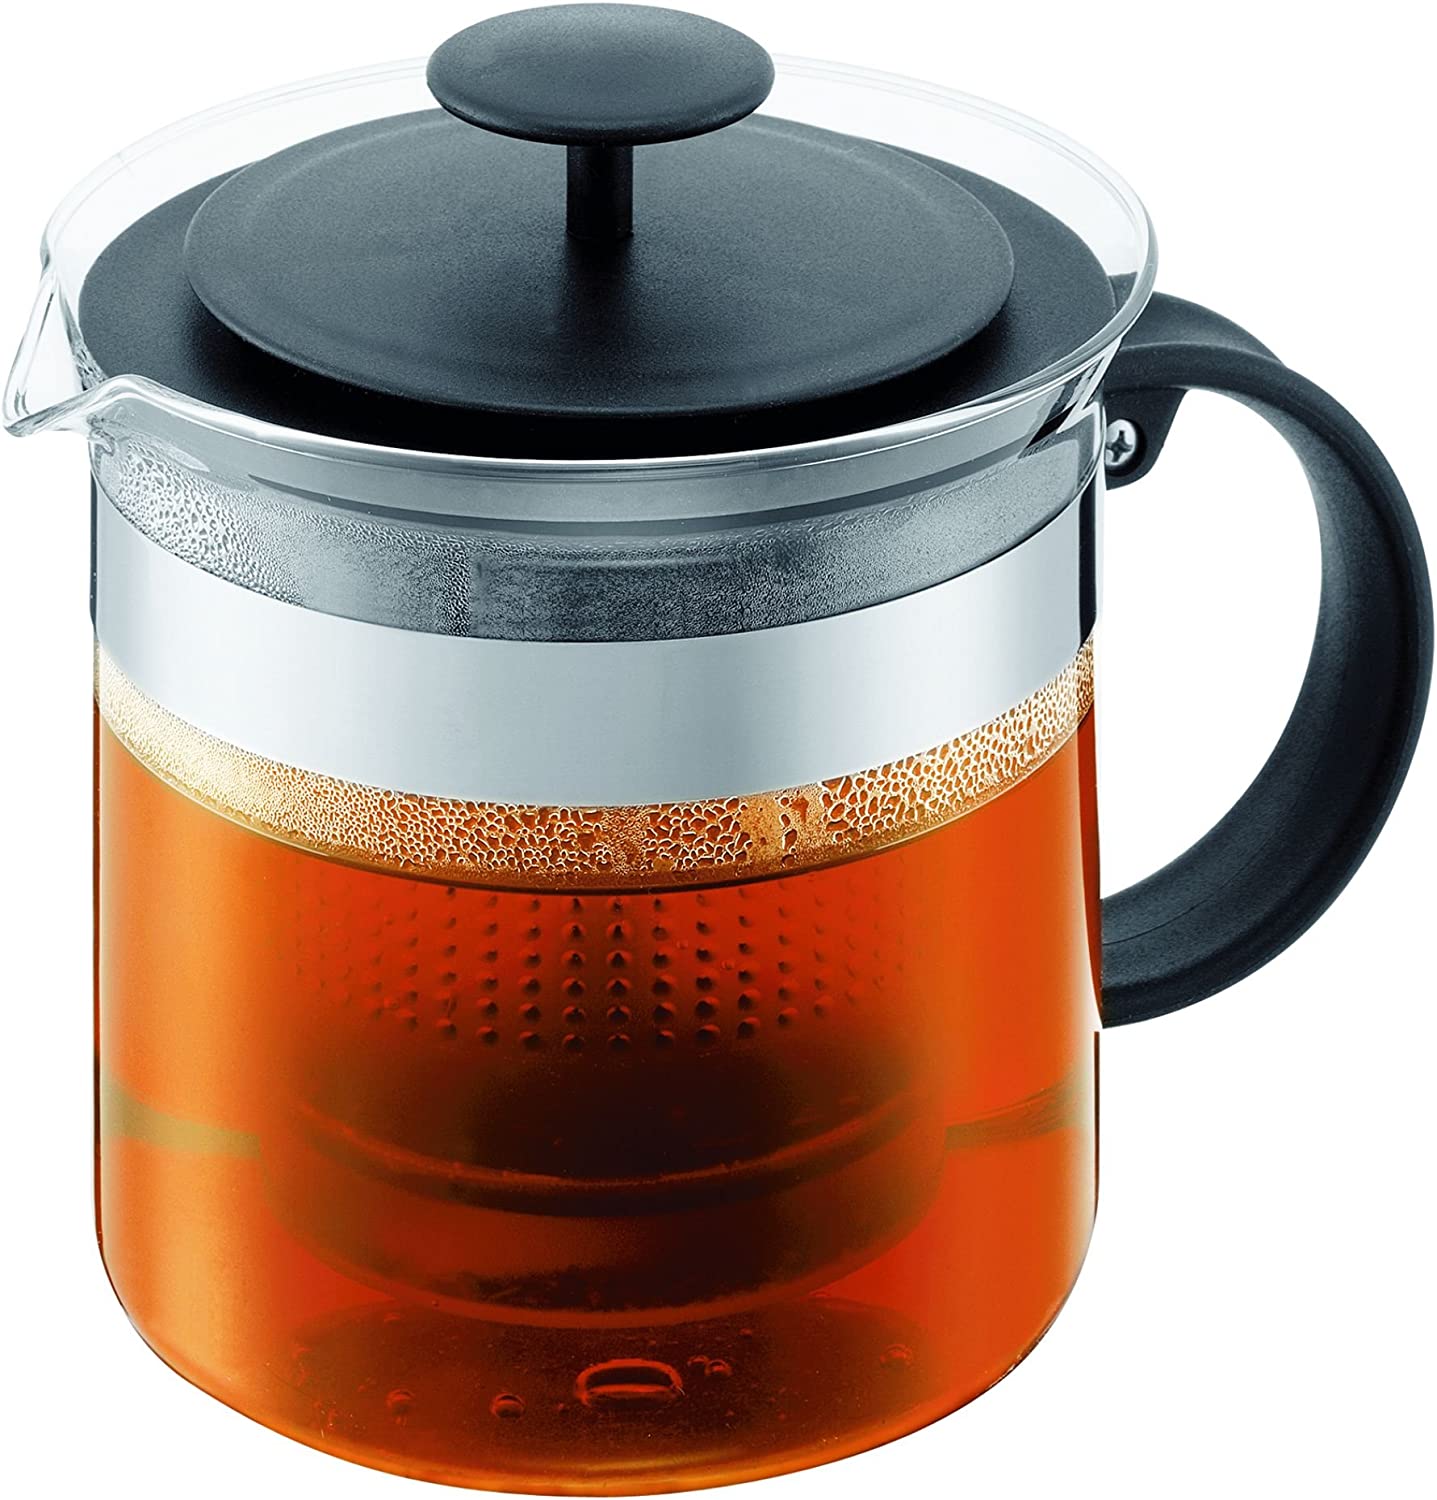 Bodum Bistro Nouveau Tea Press Teapot Black 1.5 L